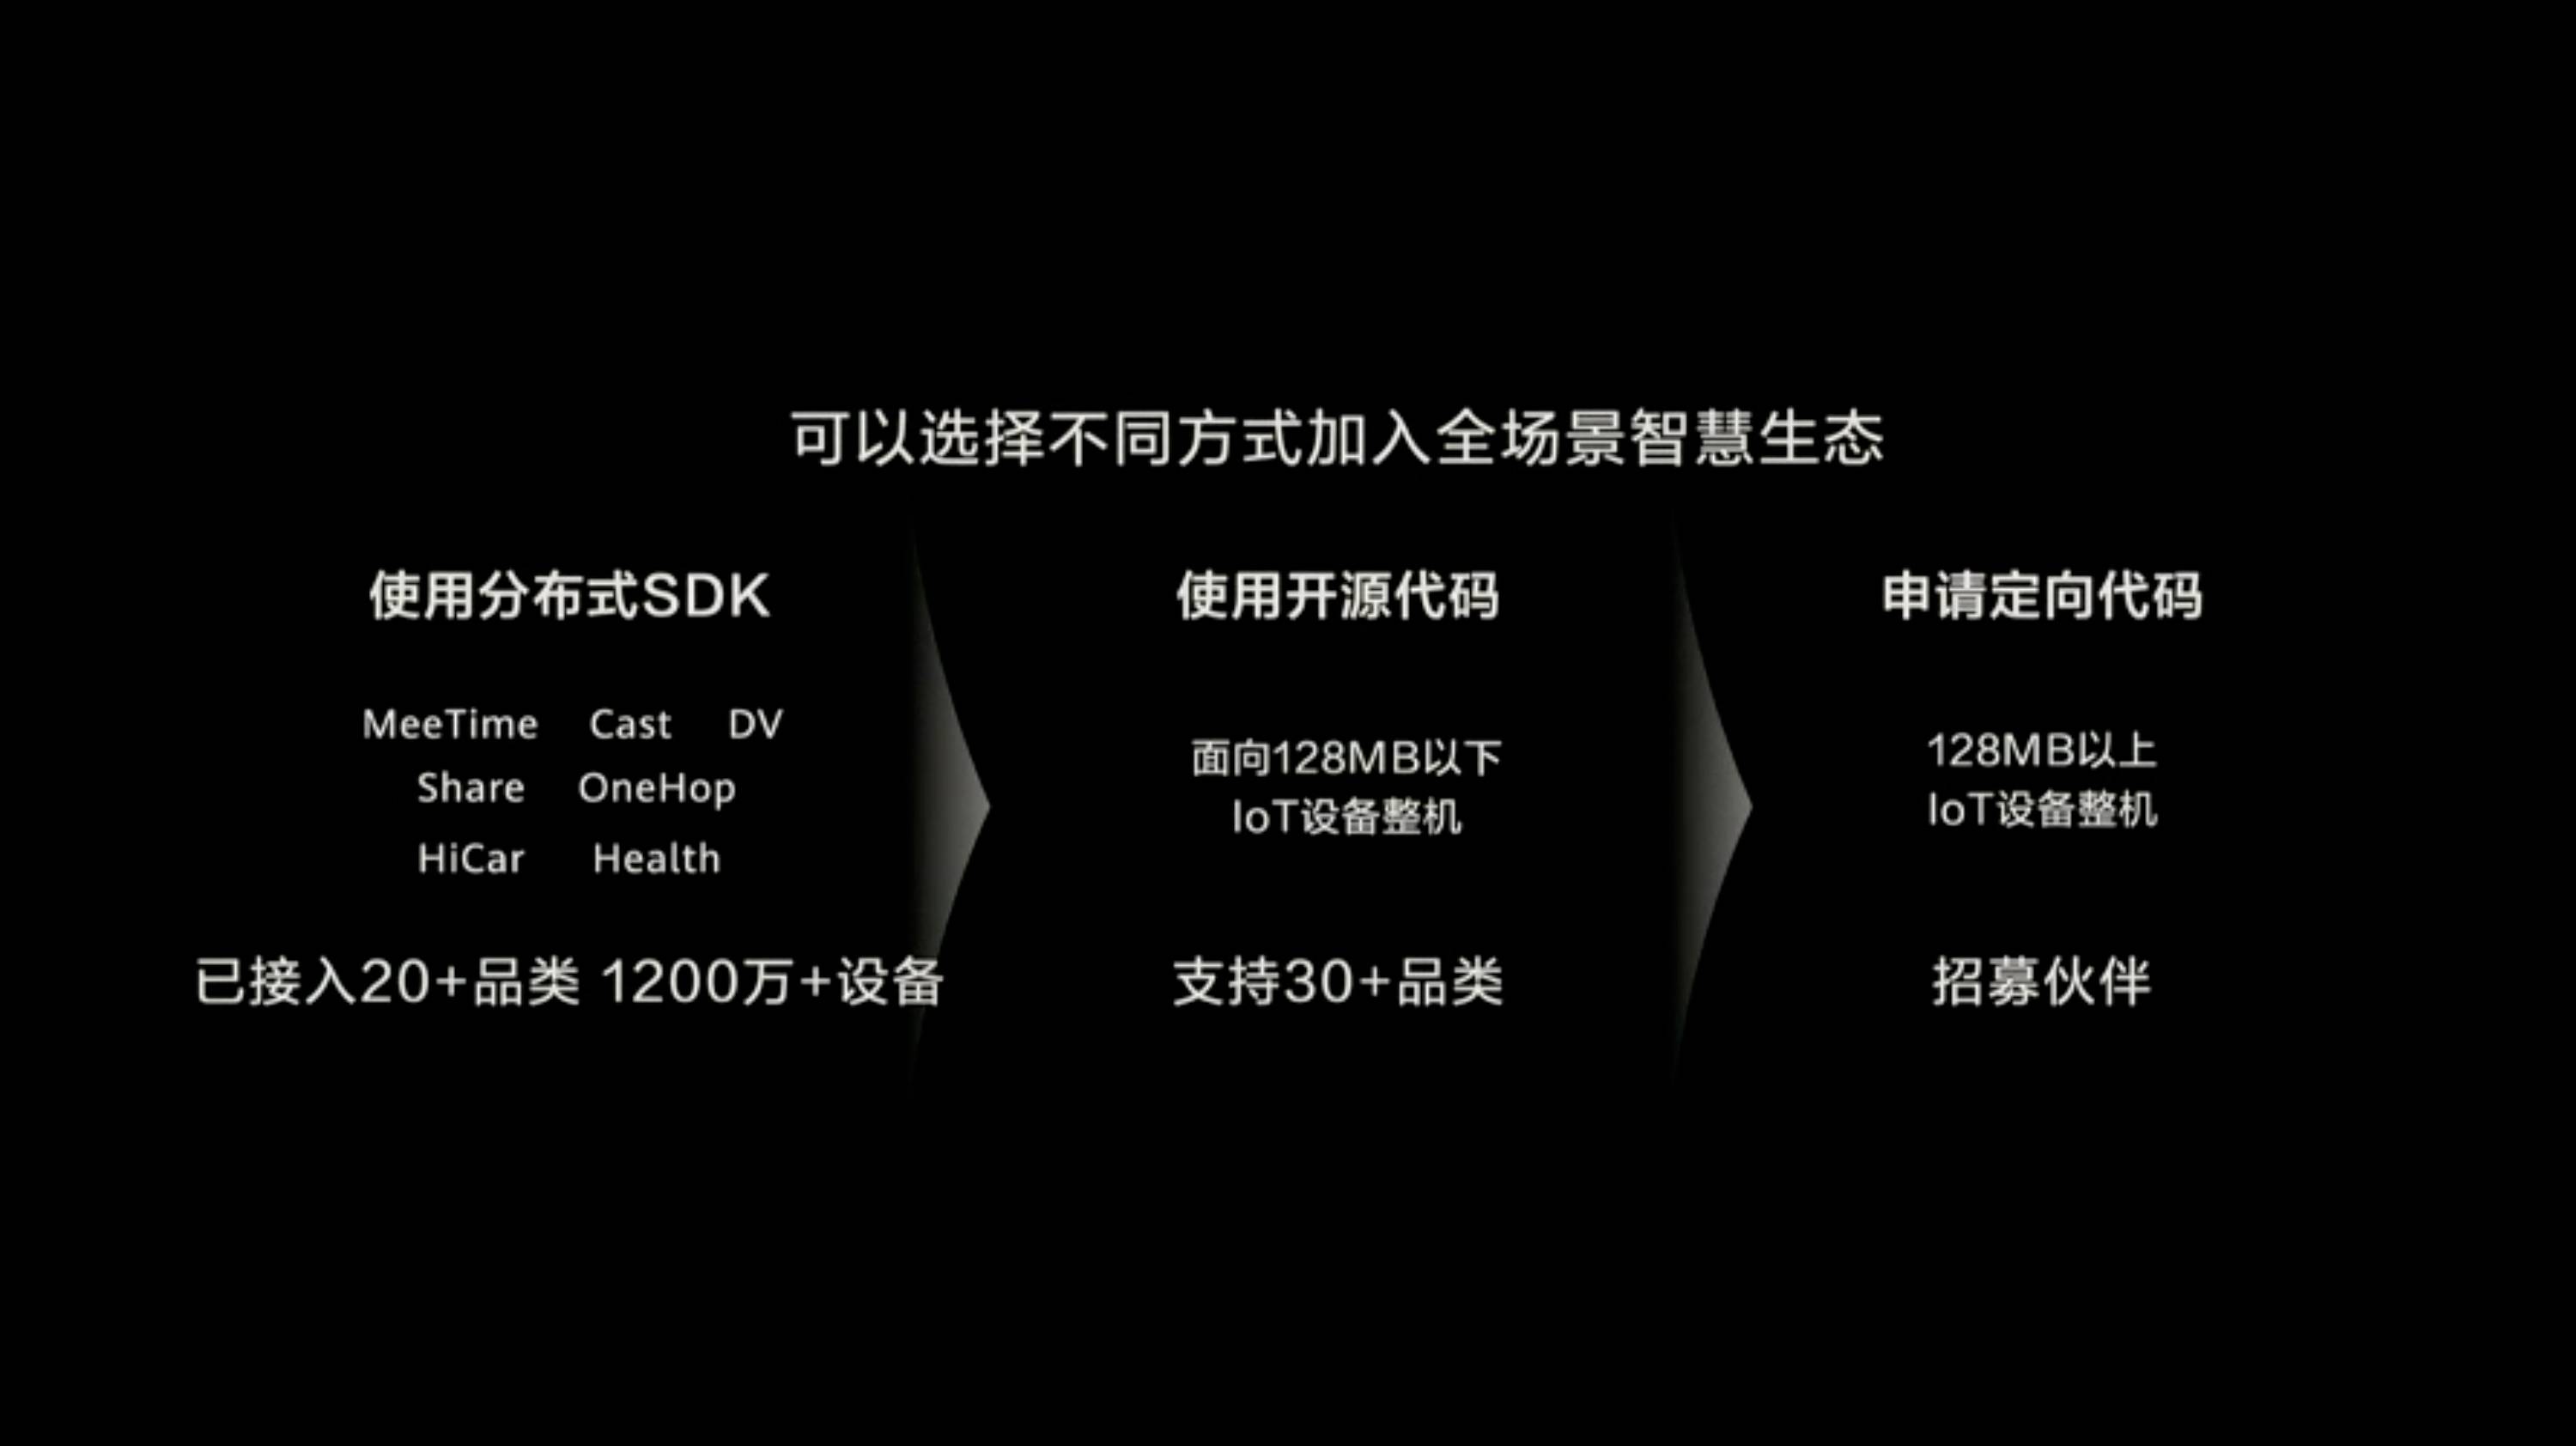 HDC 2020 PPT 65 - Huawei Hongmeng 2.0 è qui! Se non esegui un secondo Android, sarai sul tuo telefono entro la fine dell’anno